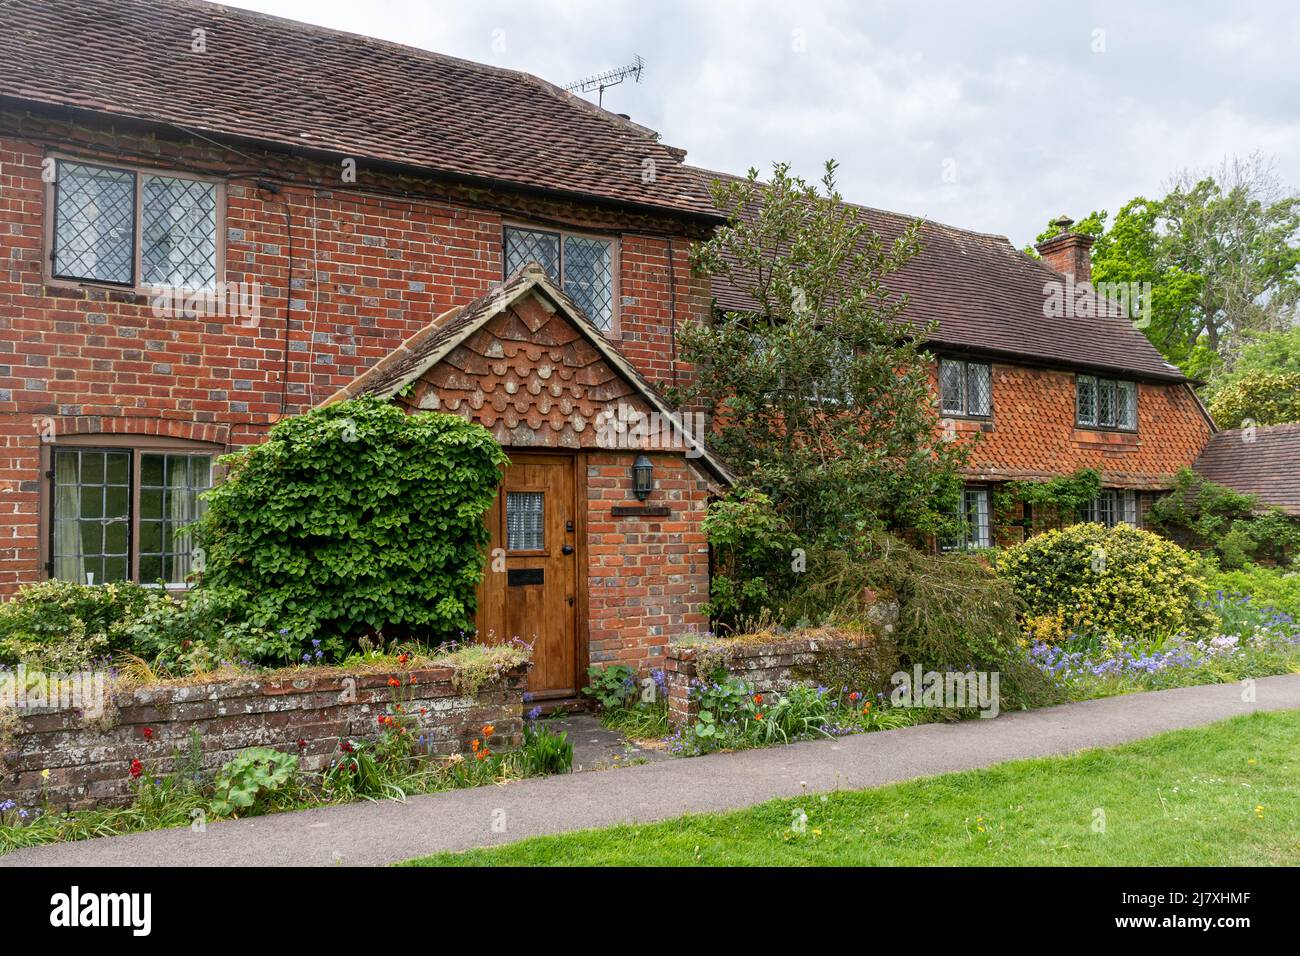 Superbes cottages et jardins dans le village de Dunsfold, Surrey, Angleterre, Royaume-Uni Banque D'Images